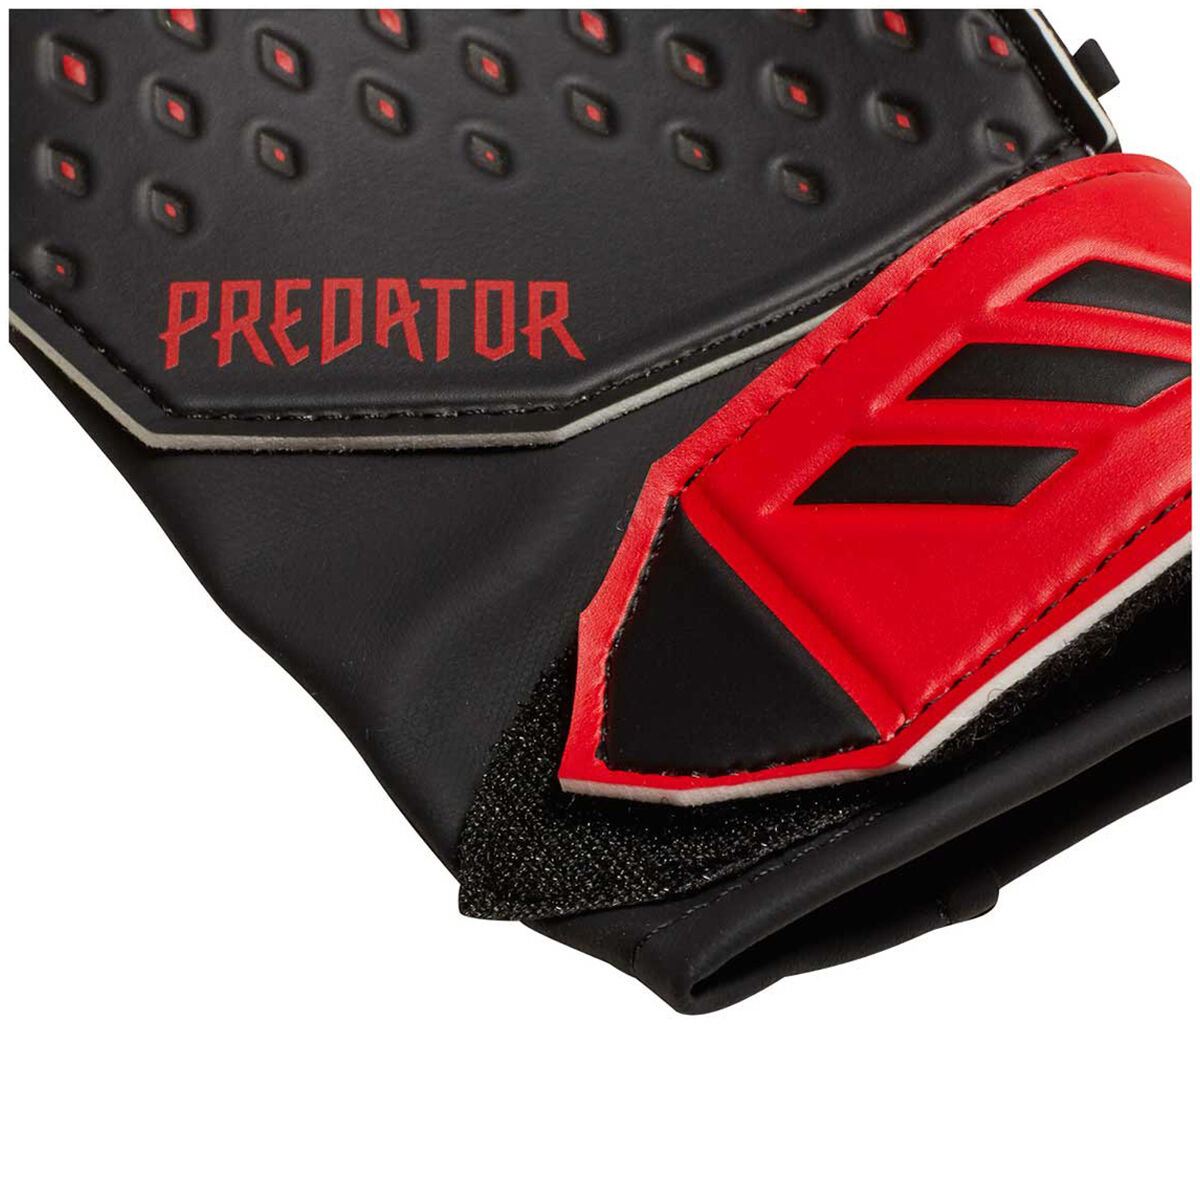 Predator Mutator adidas UK